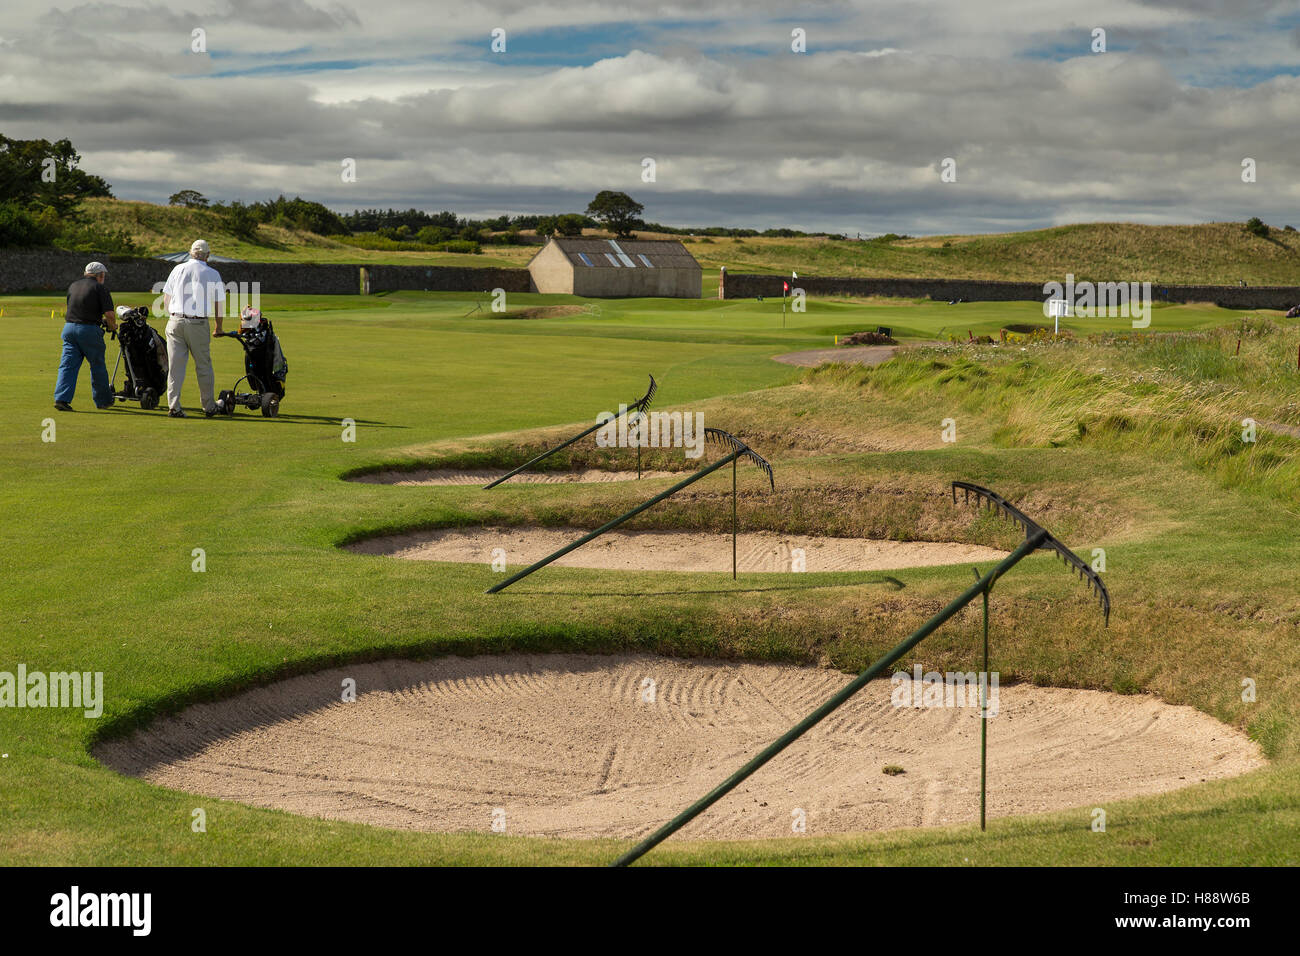 Les bunkers de golf les fosses de sable avec râteaux dans une ligne sur se situe à côté de l'allée Banque D'Images